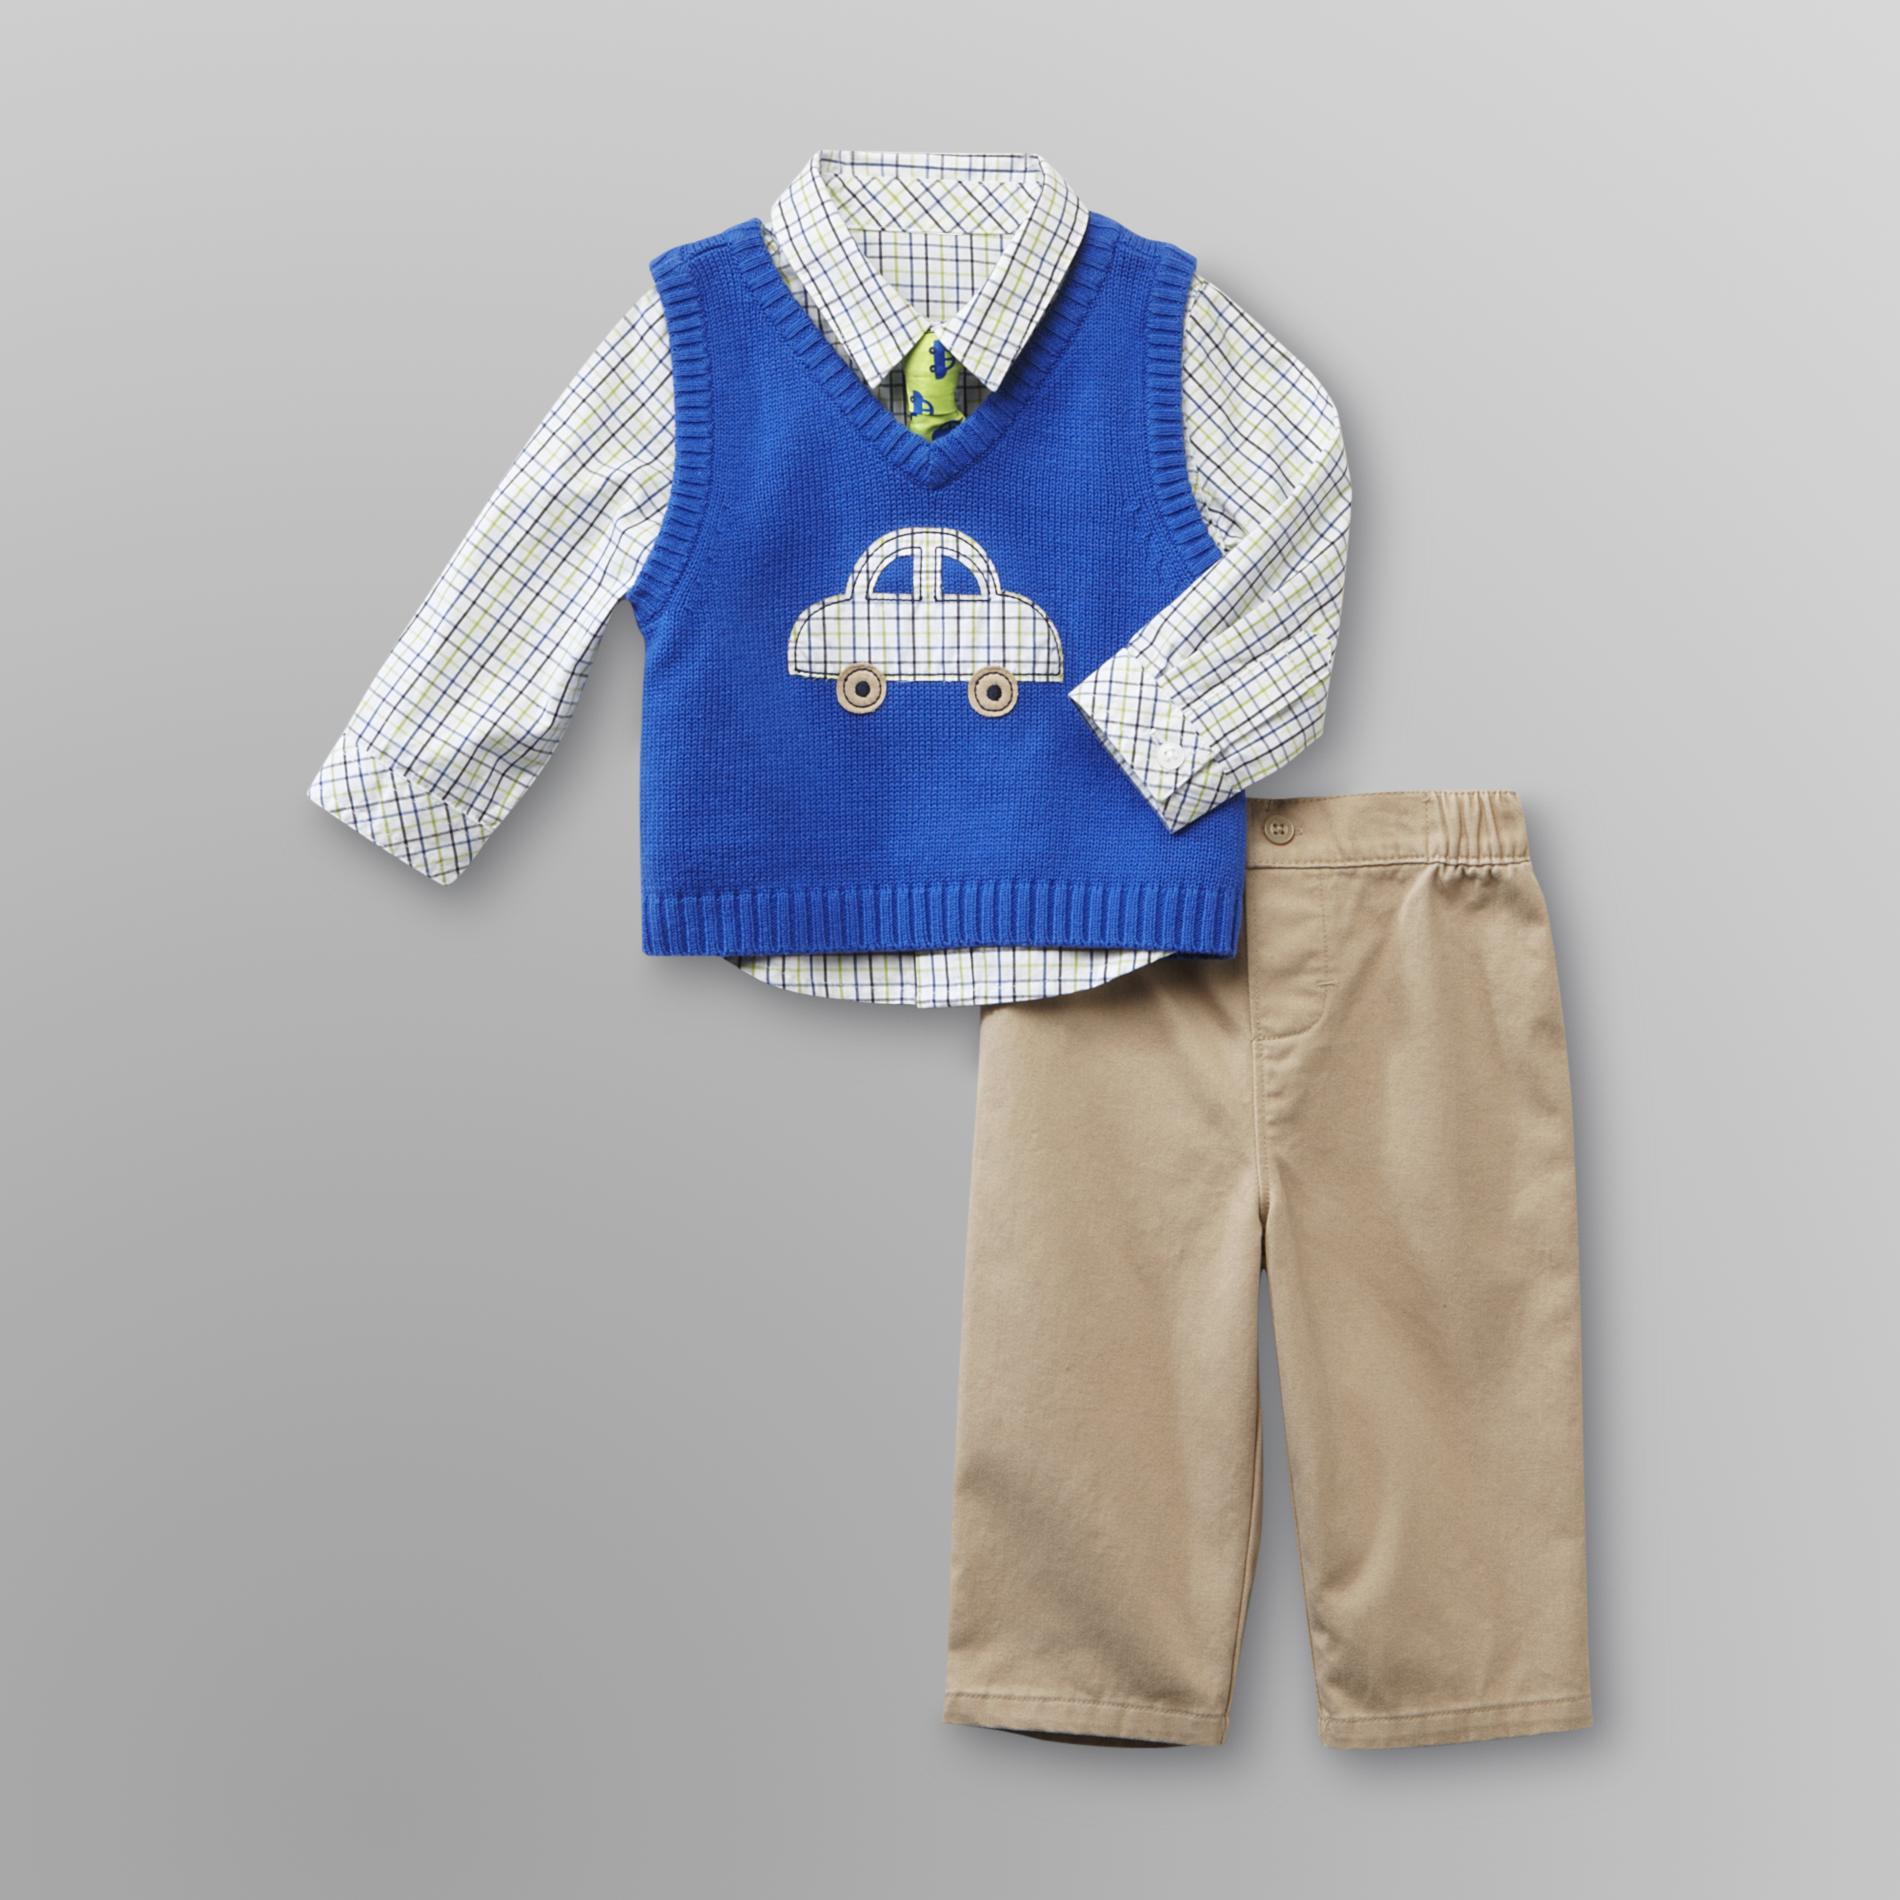 Small Wonders Infant Boy's Vest  Shirt  Tie & Pants - Car